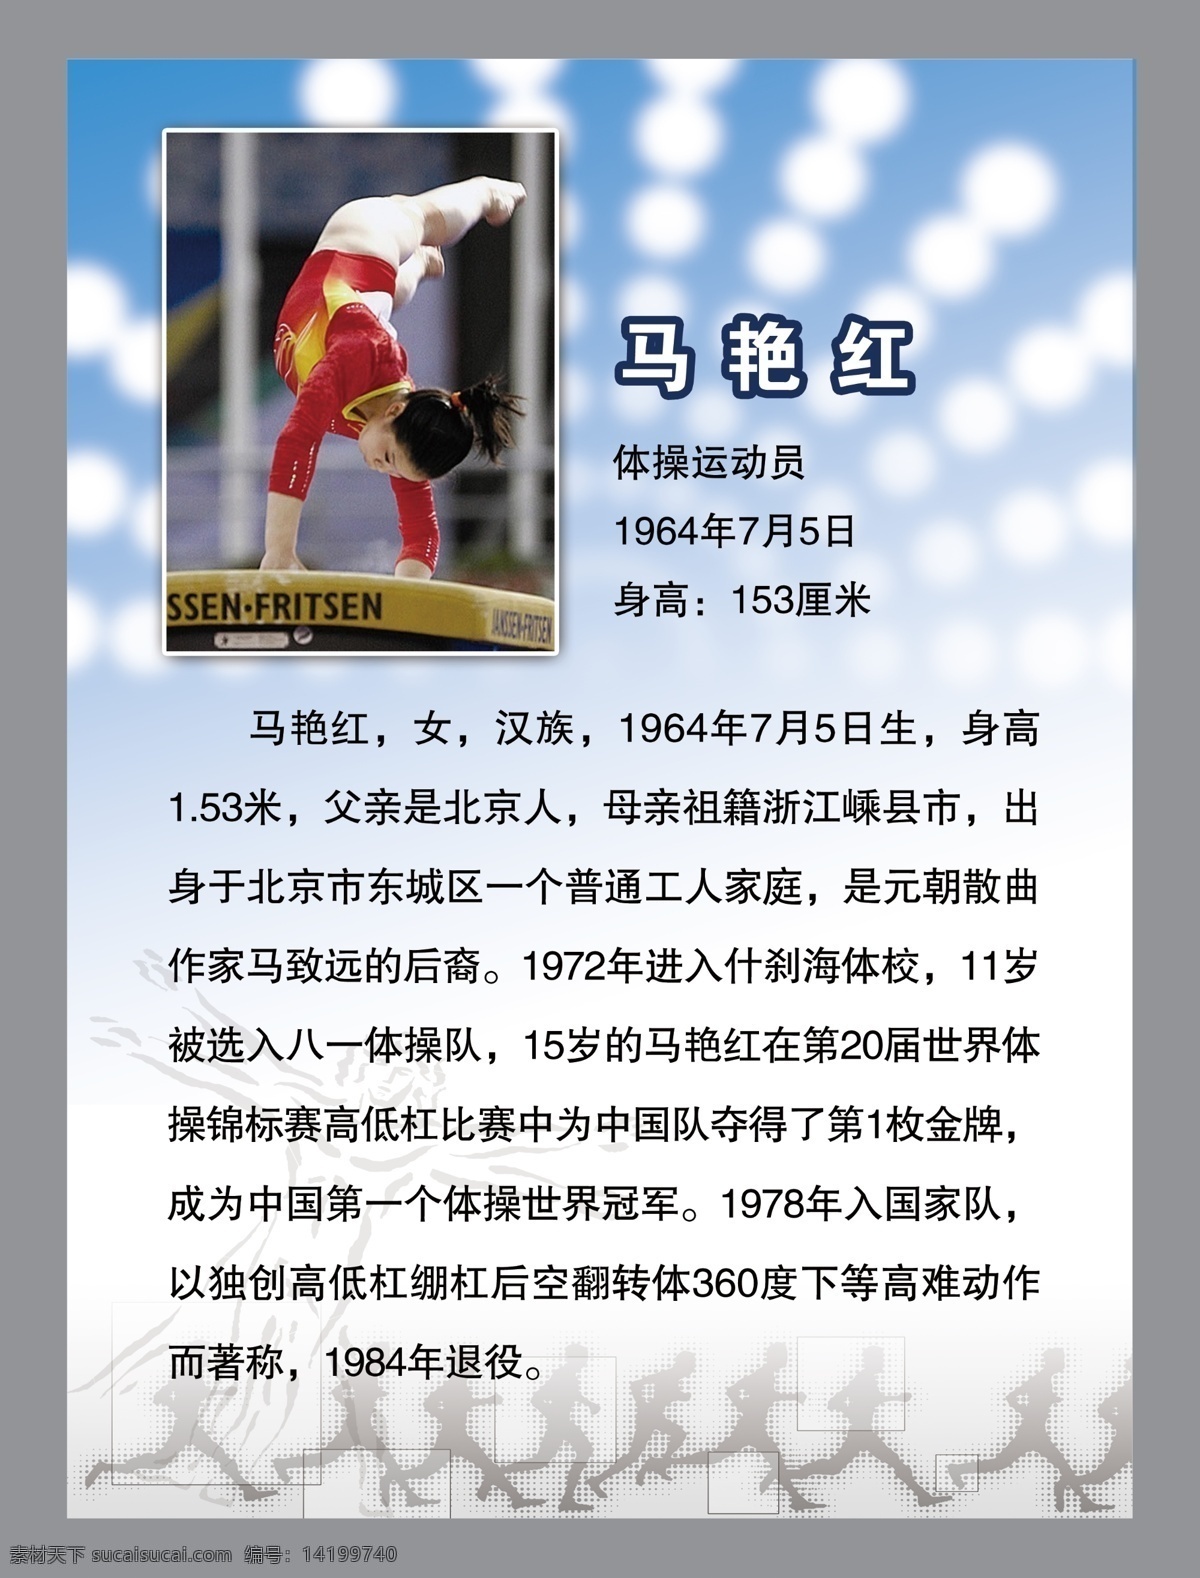 明星 马艳红 奥运冠军 简介 体操运动员 展板模板 广告设计模板 源文件